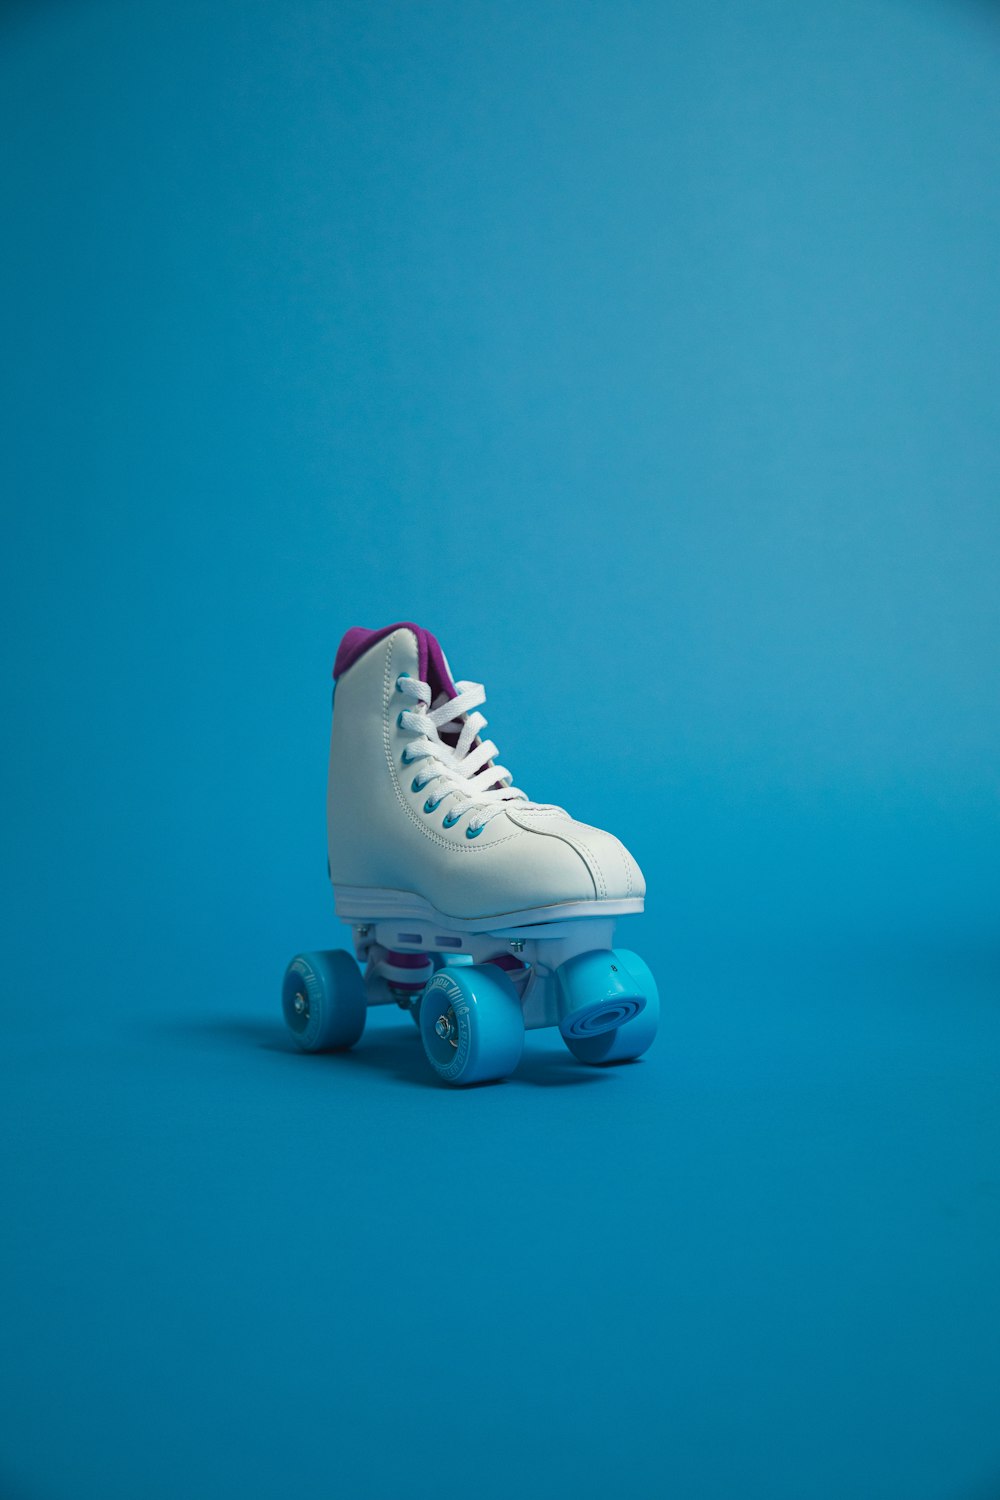 30,000+ Roller Skating Pictures | Download Free Images on Unsplash